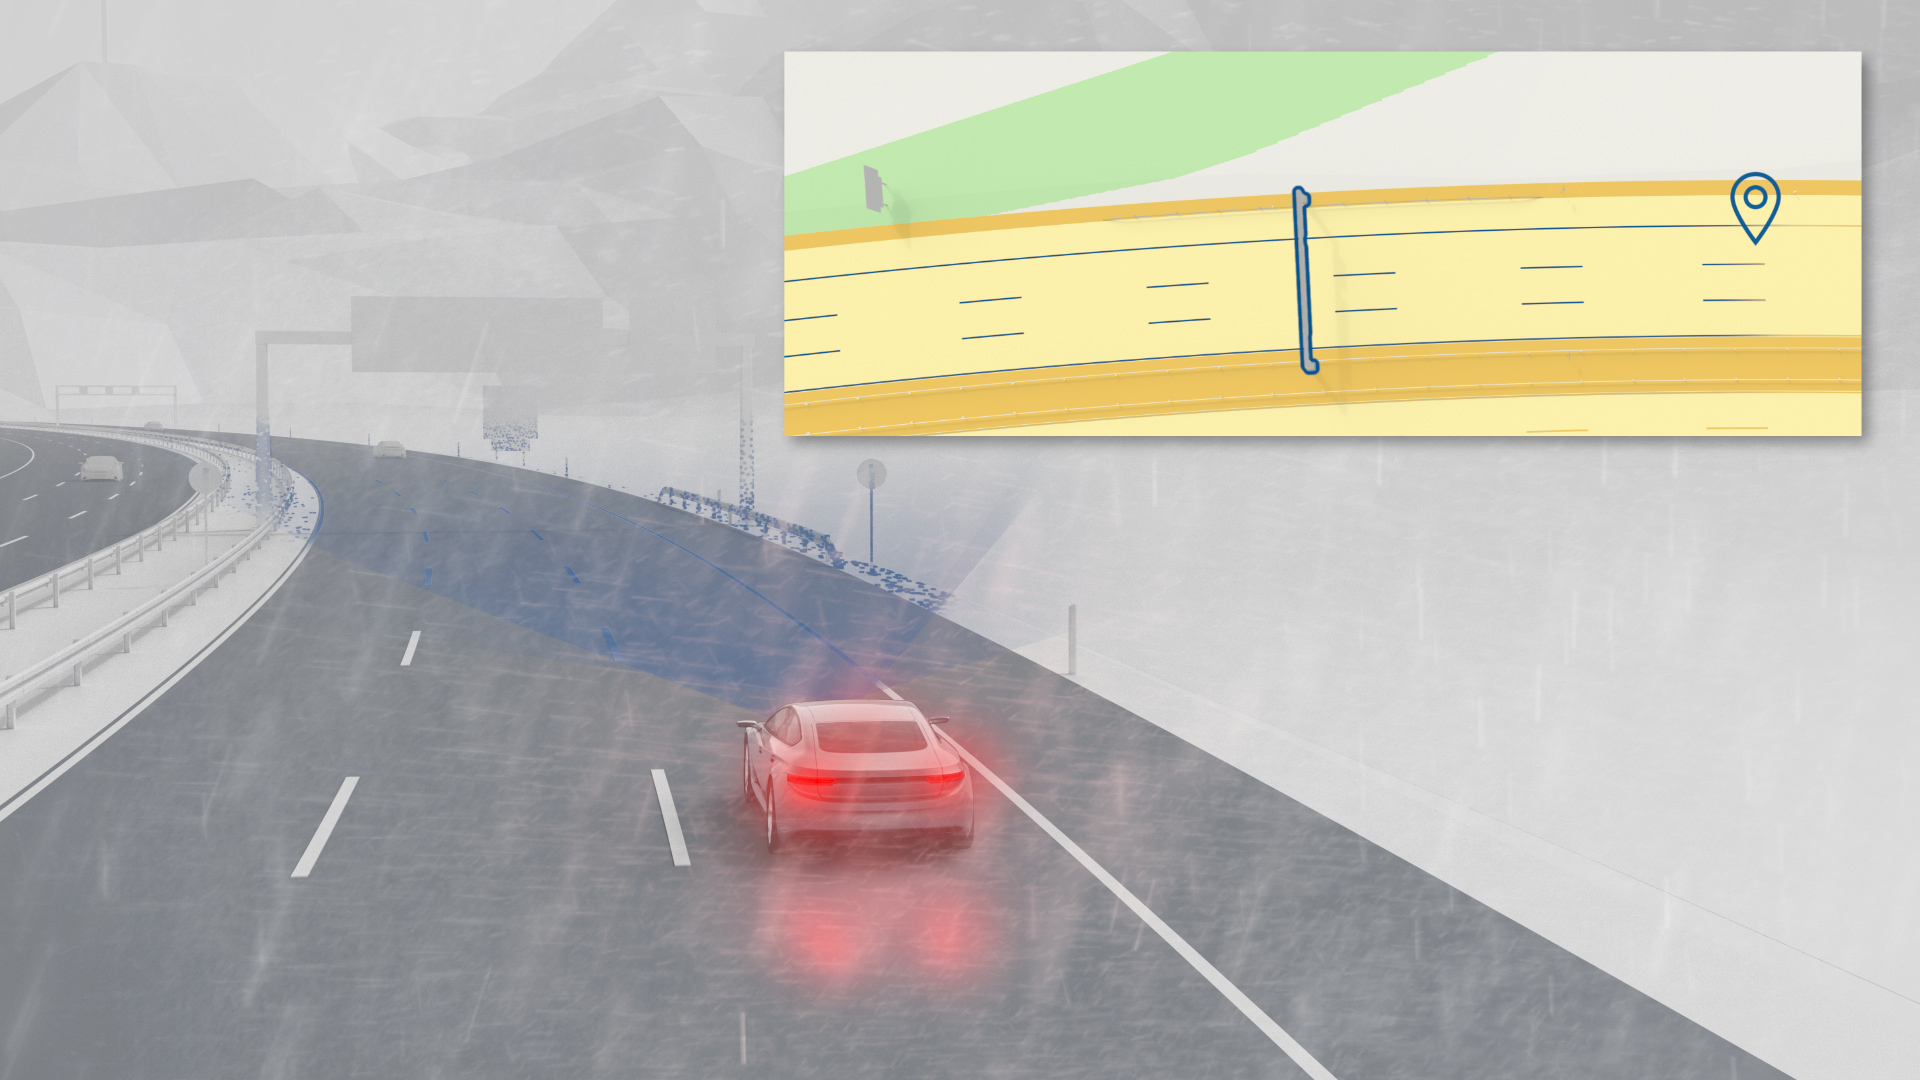 Díky signature silnice Bosch mohou vozidla určit svou polohu s vysokou mírou přesnosti